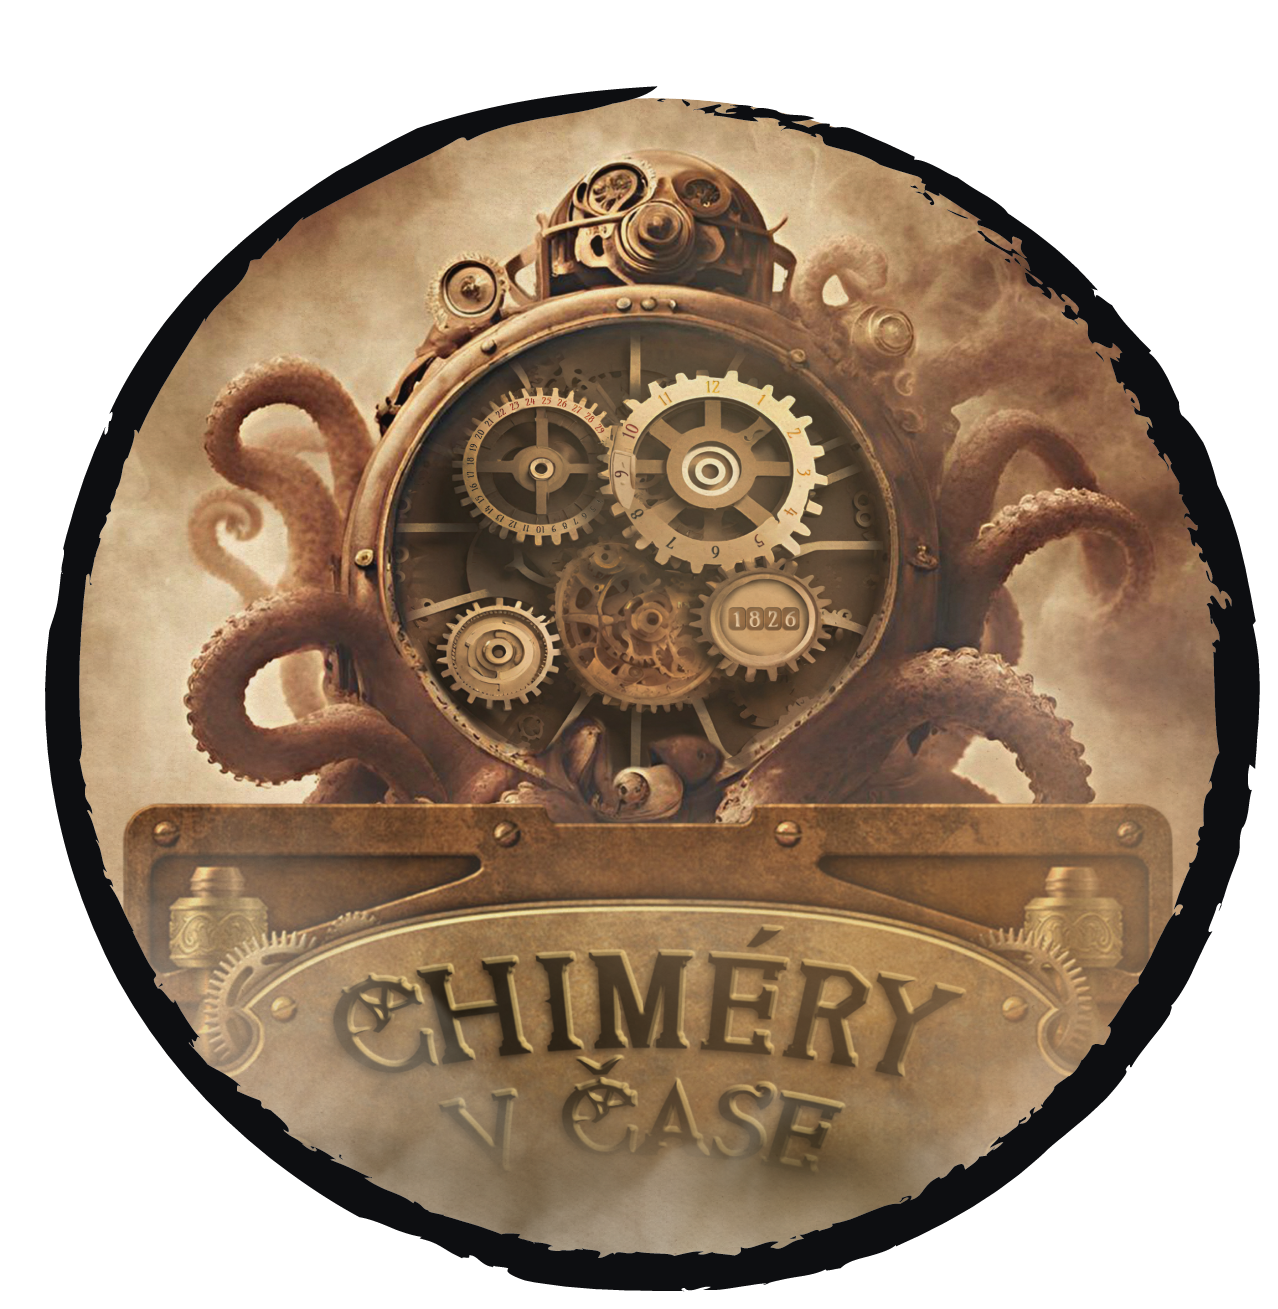 chimery-v-case-logo, 1,4MB